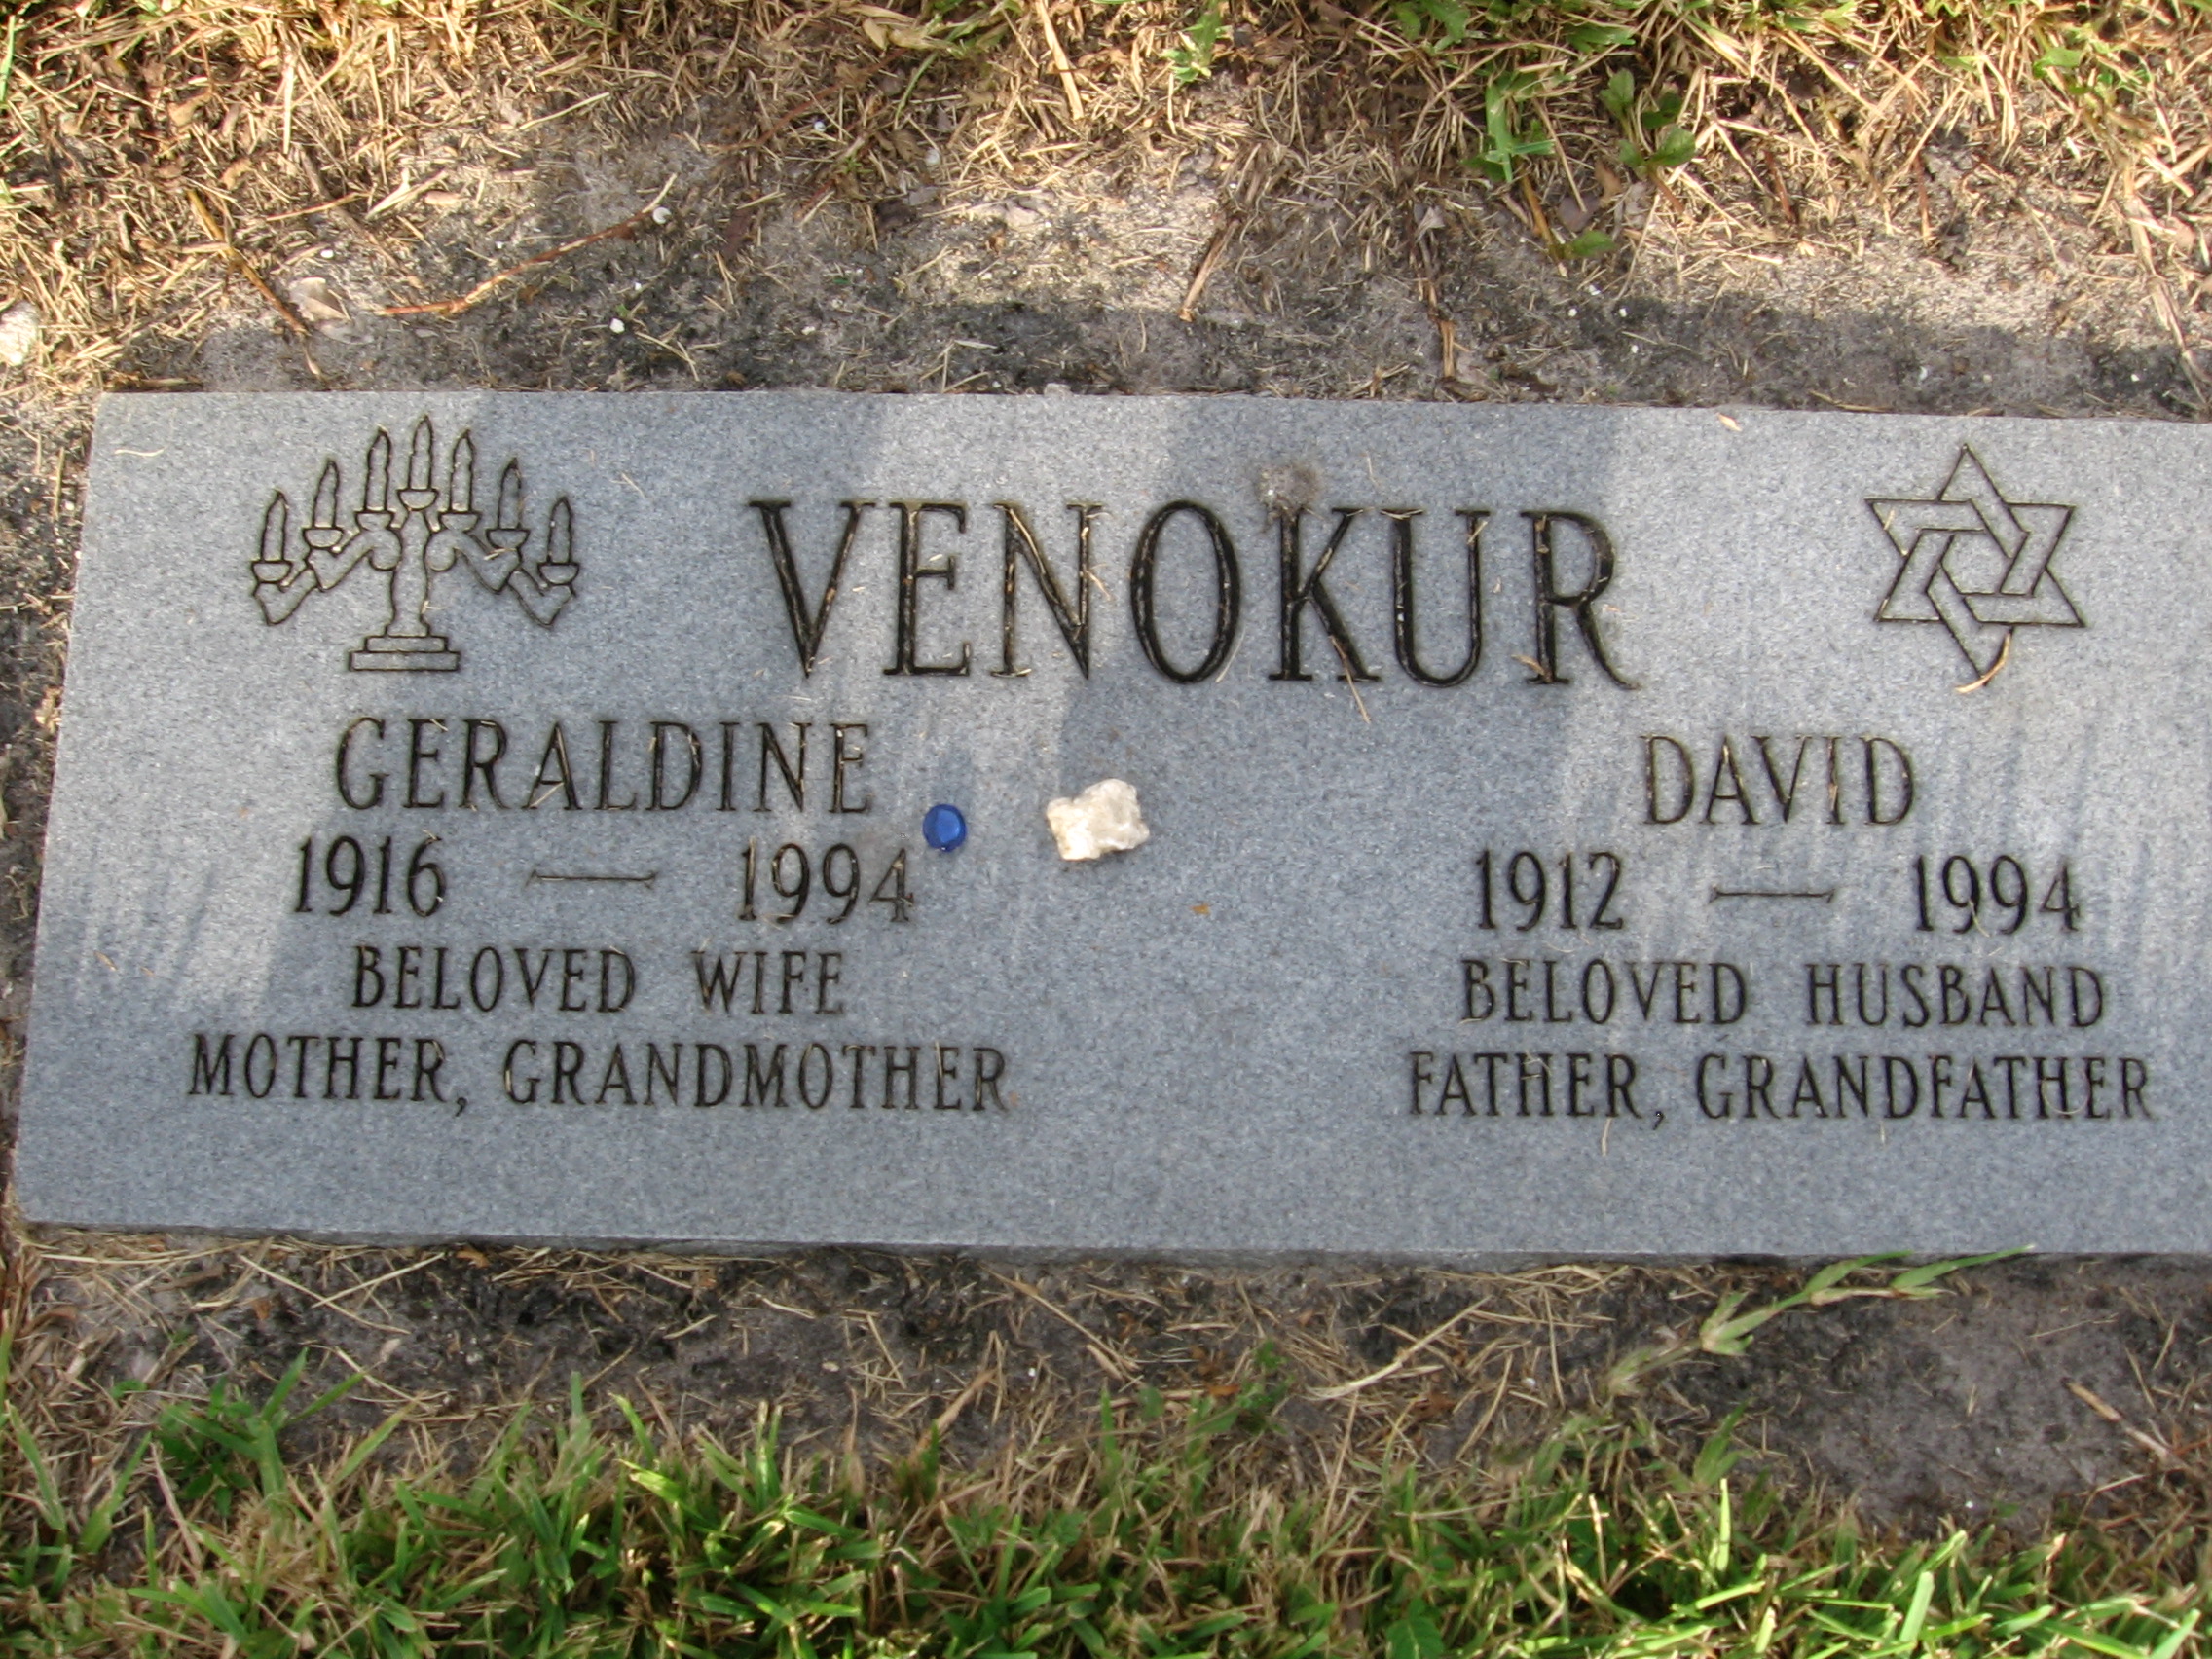 David Venokur